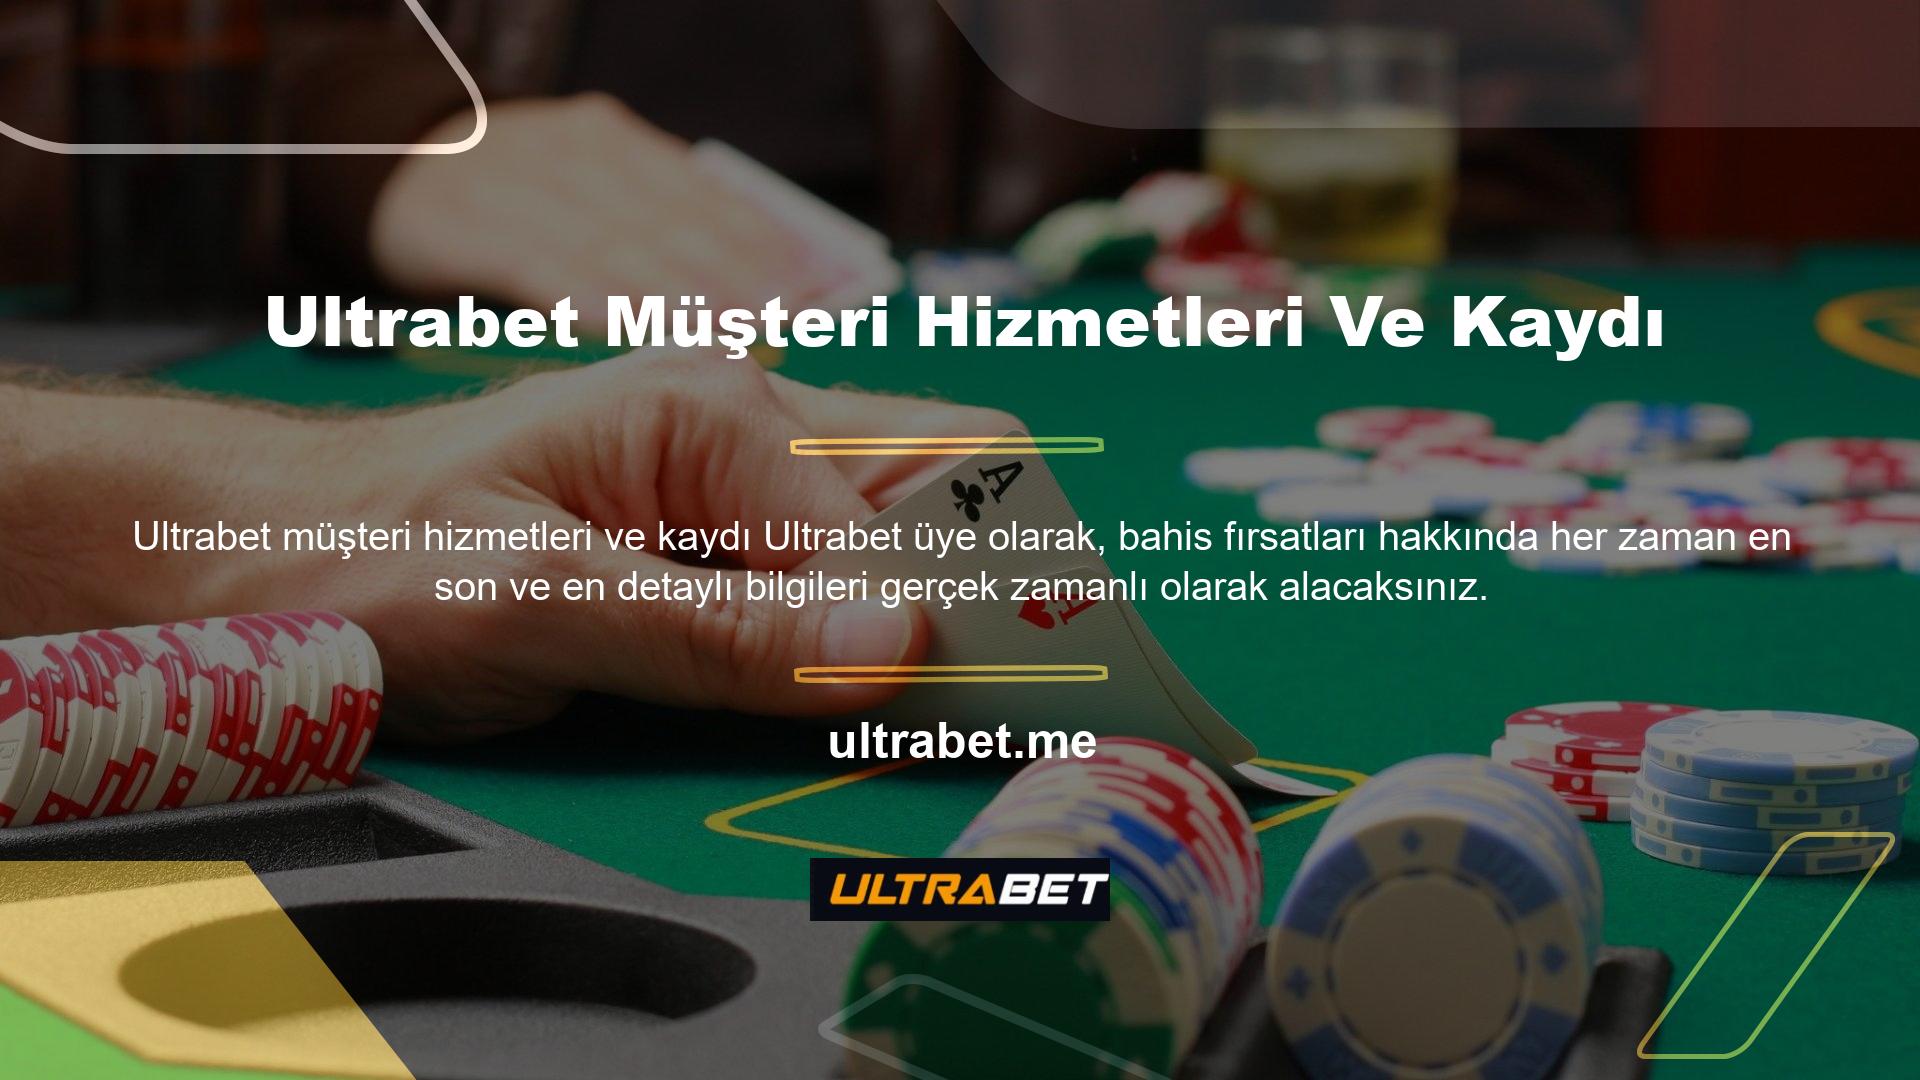 Ultrabet, iyi planlanmış ve yaratıcı bir offshore casino sitesi olarak modern bir yapıya dönüştürülür